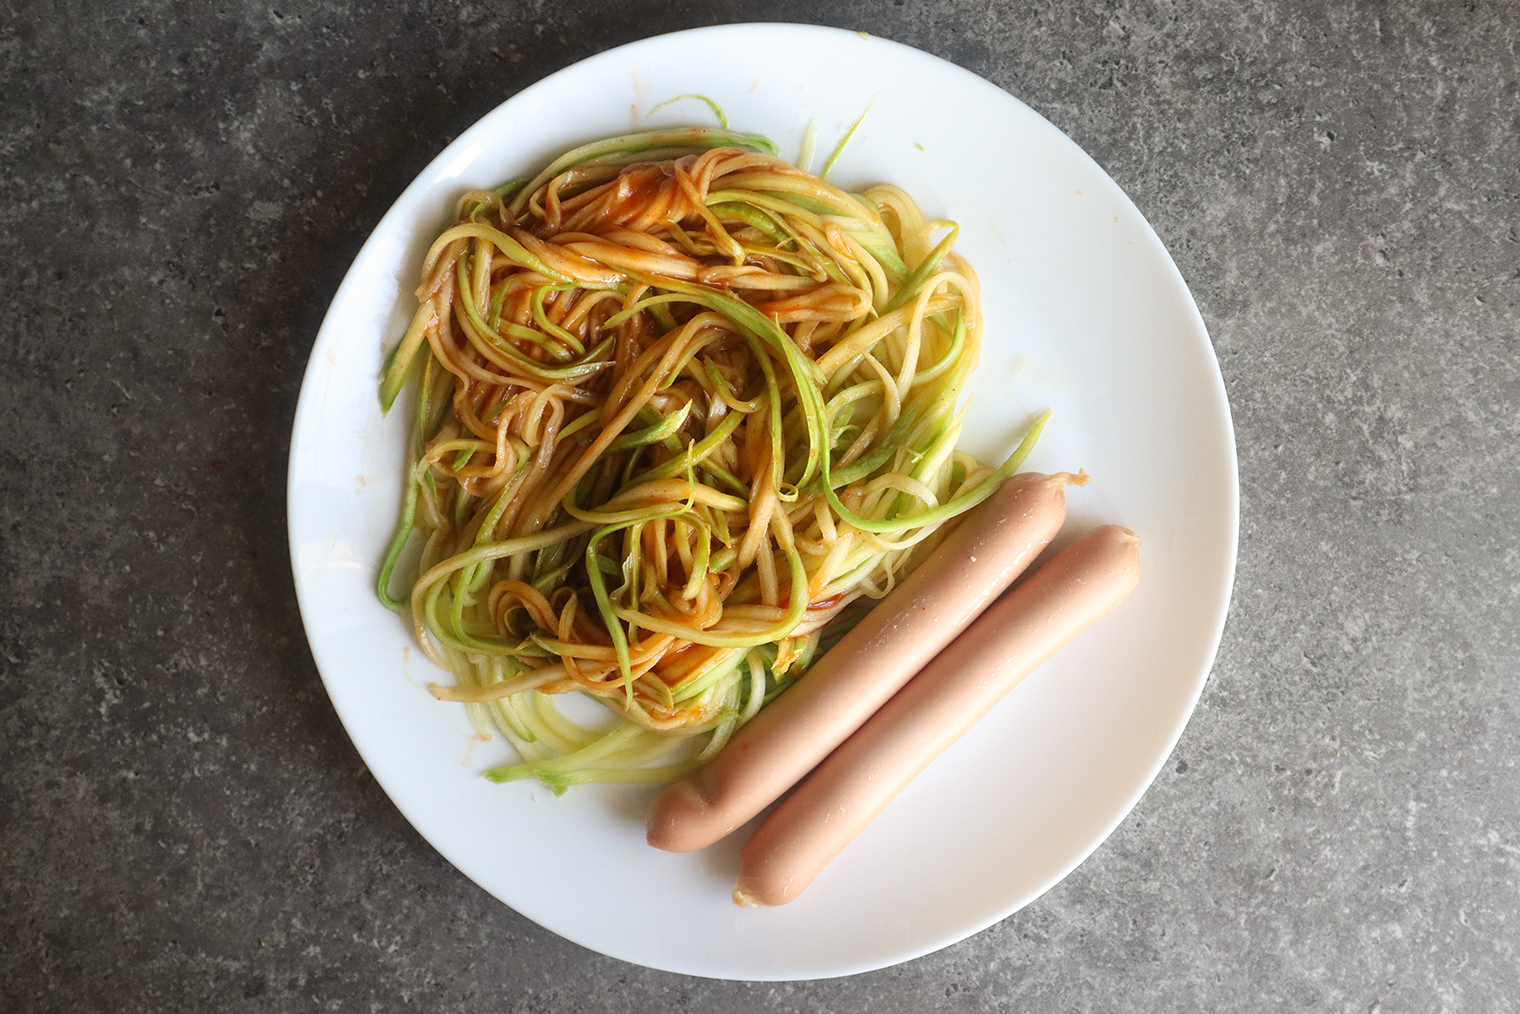 Ужин — 100 г овощей: спагетти из кабачка с покупным низкокалорийным кетчупом и сосисками из индейки